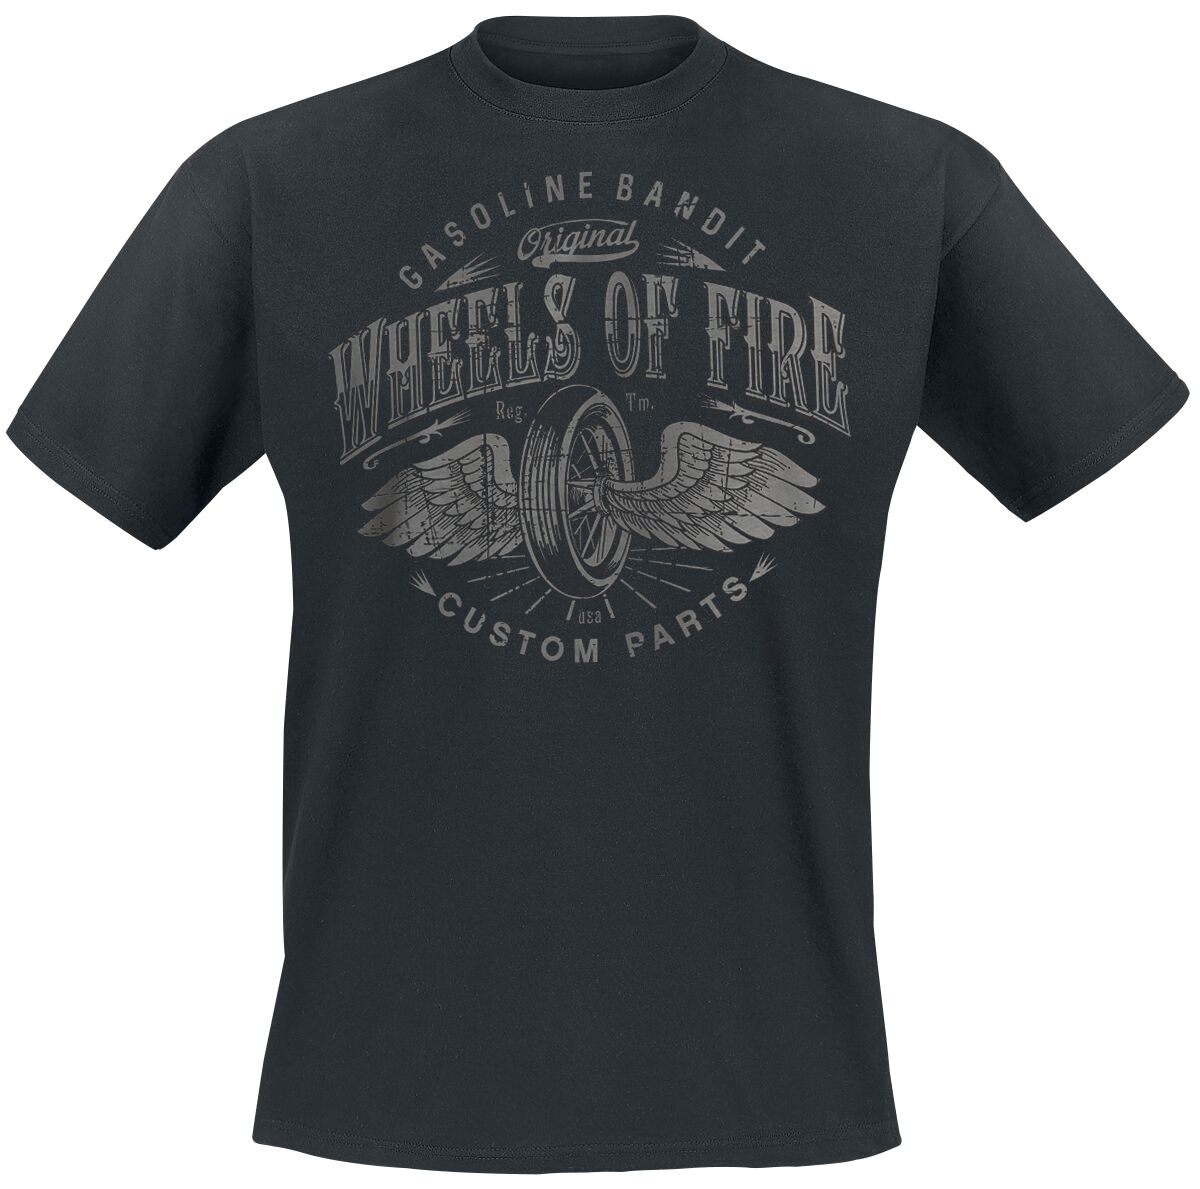 Gasoline Bandit Wheels Of Fire T-Shirt schwarz in XXL